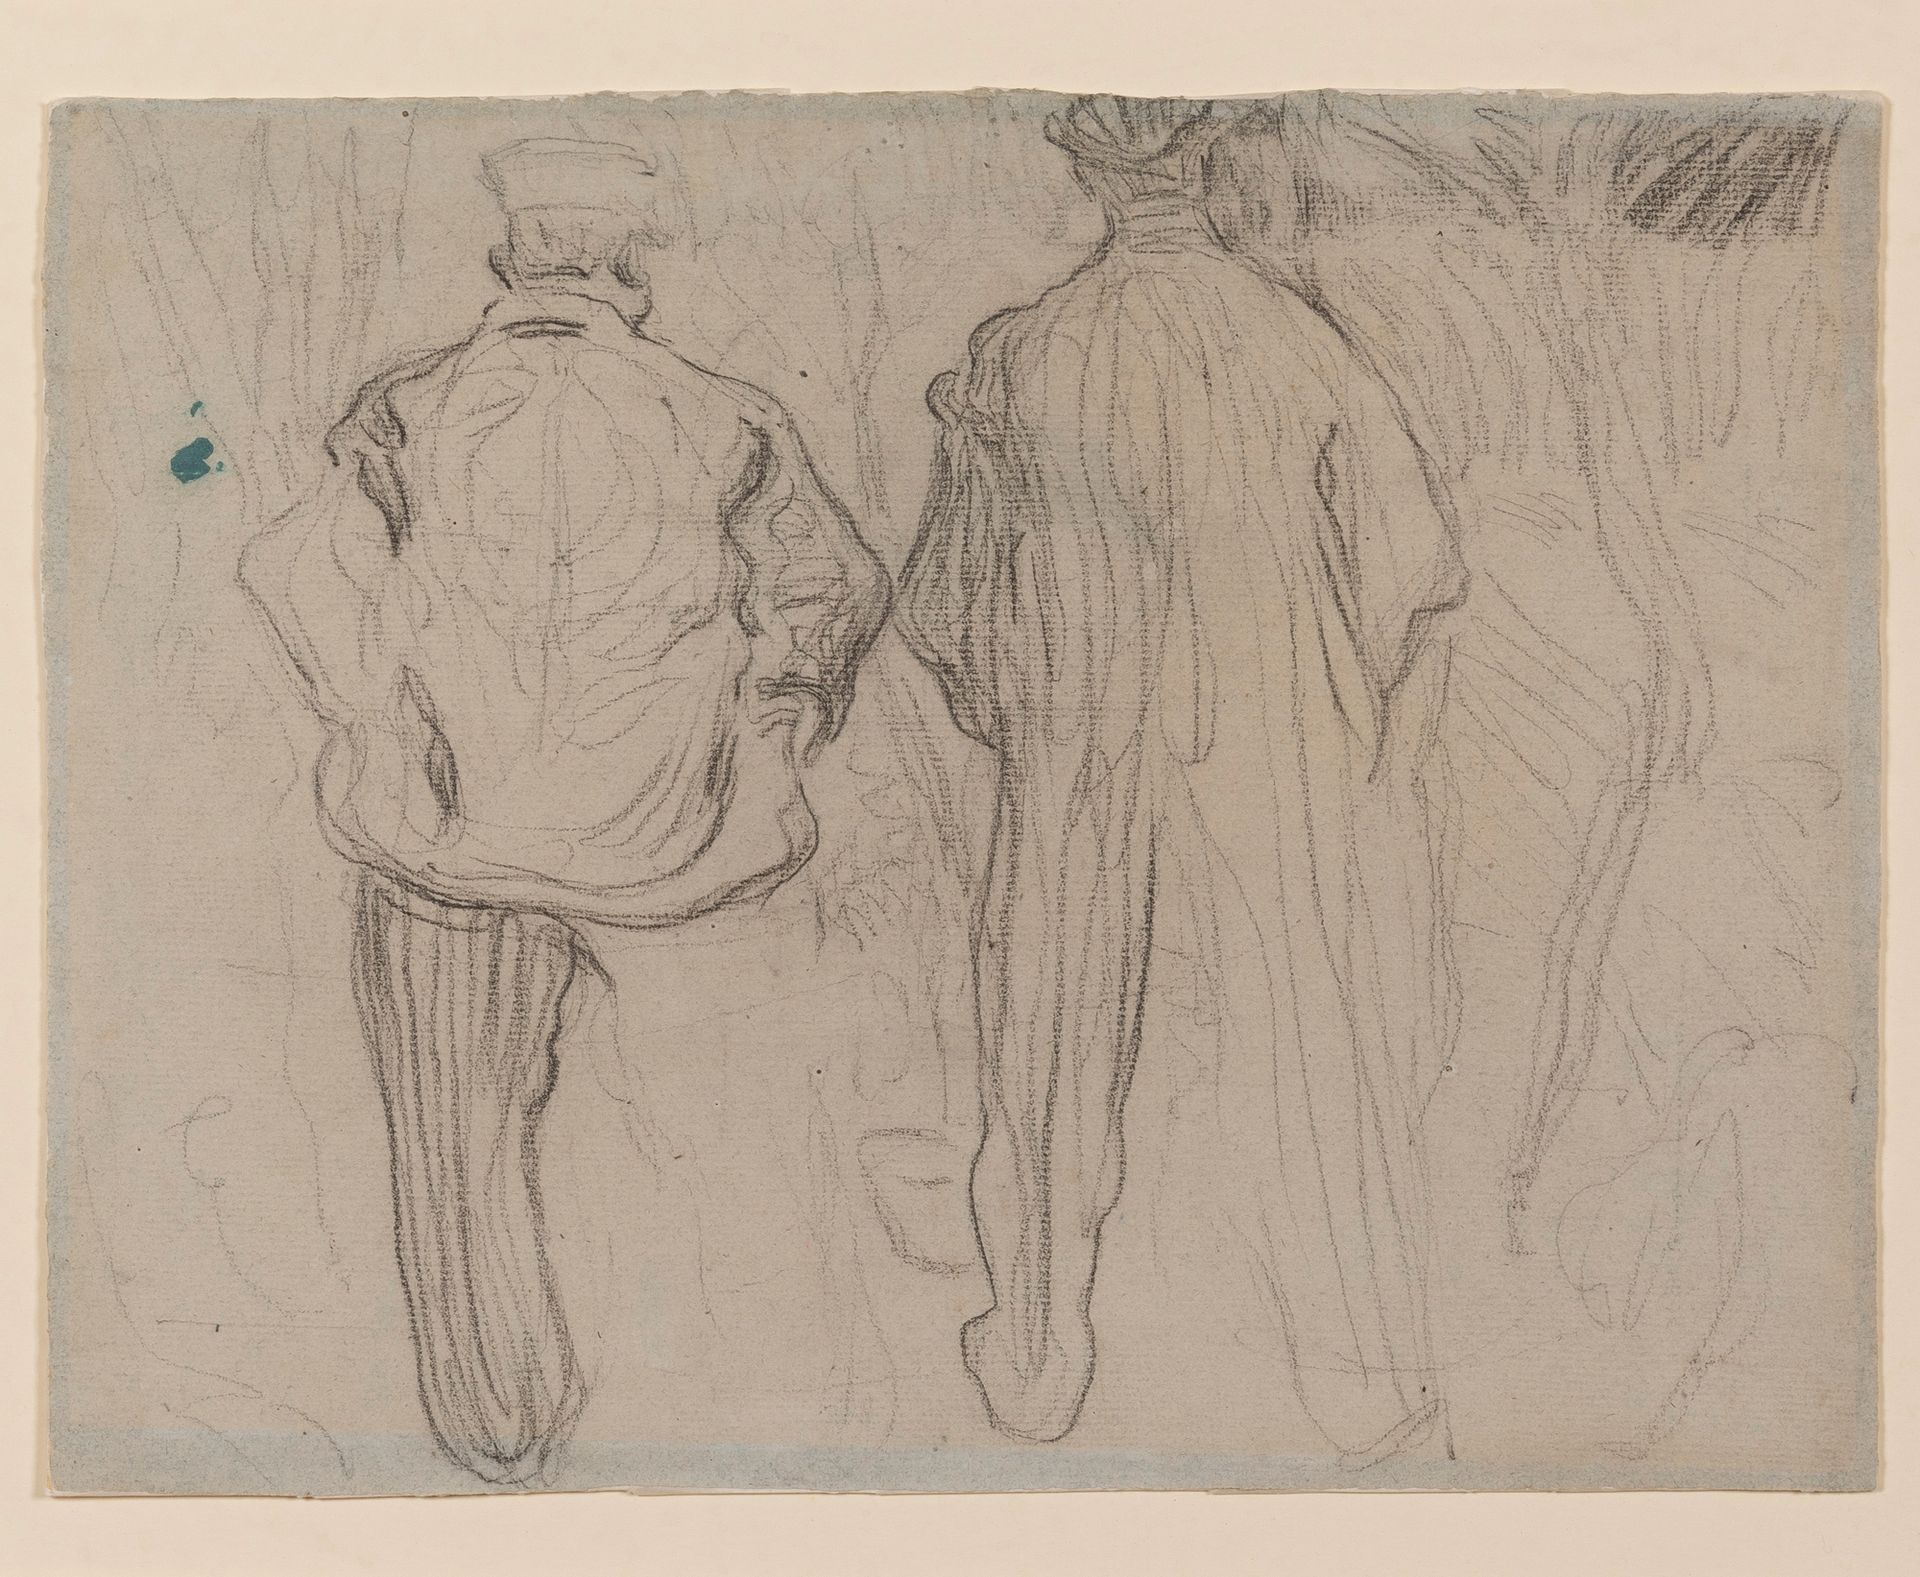 HENRY VAN DE VELDE (1863-1957) 
Dos hombres vistos de espaldas, hacia 1891



Ca&hellip;